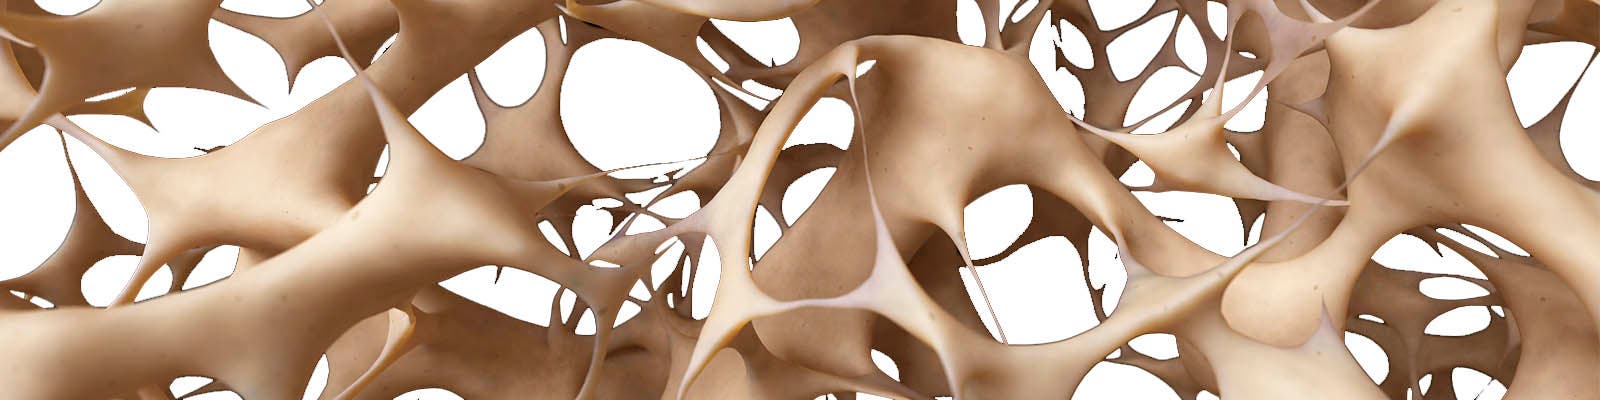 Componentes y estructuras de los Huesos